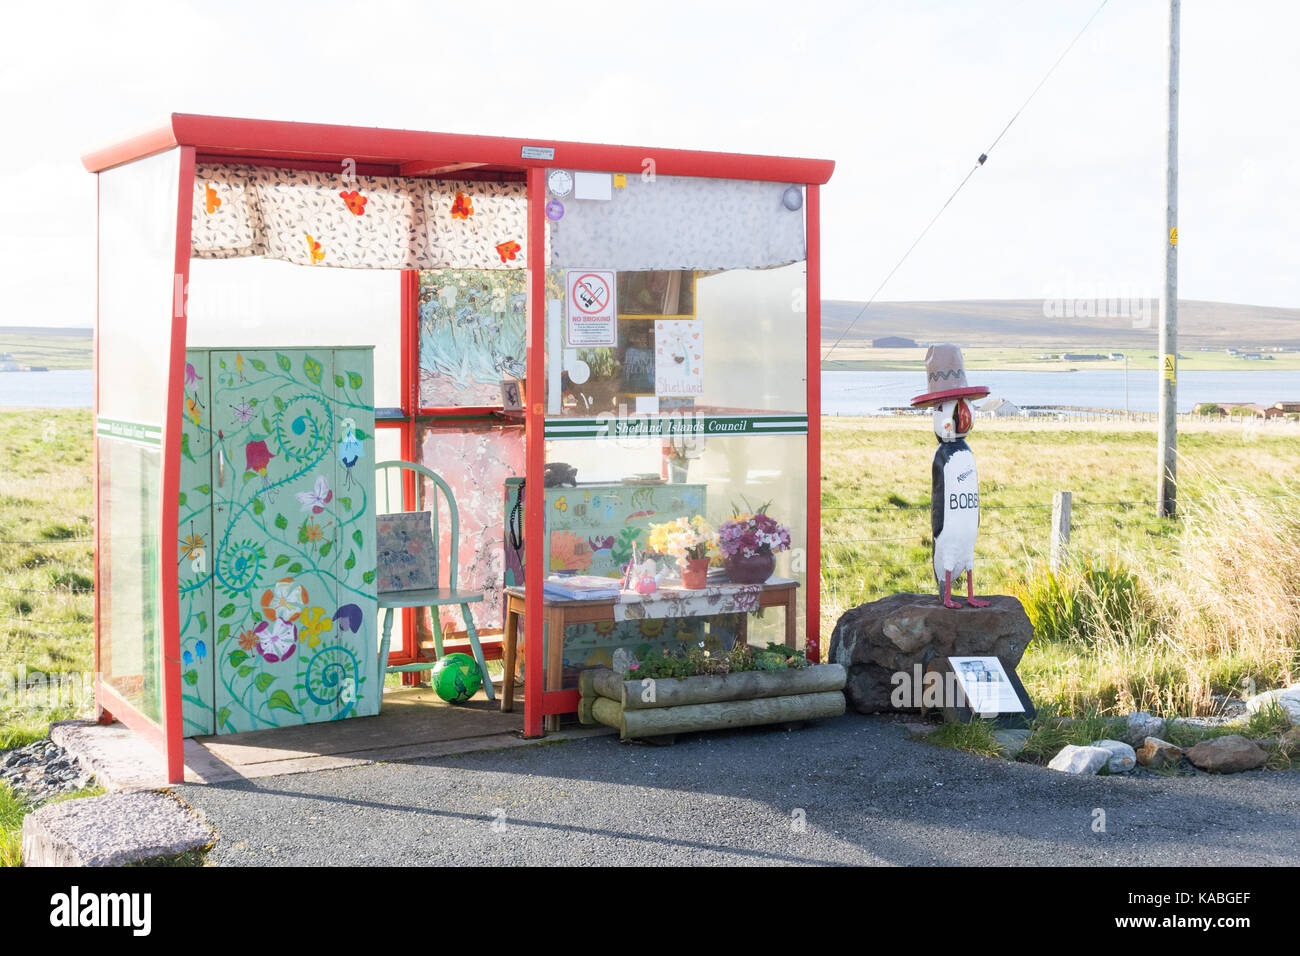 Bobby's fermata bus - una insolita attrazione turistica in unst, isole Shetland, Scotland, Regno Unito Foto Stock